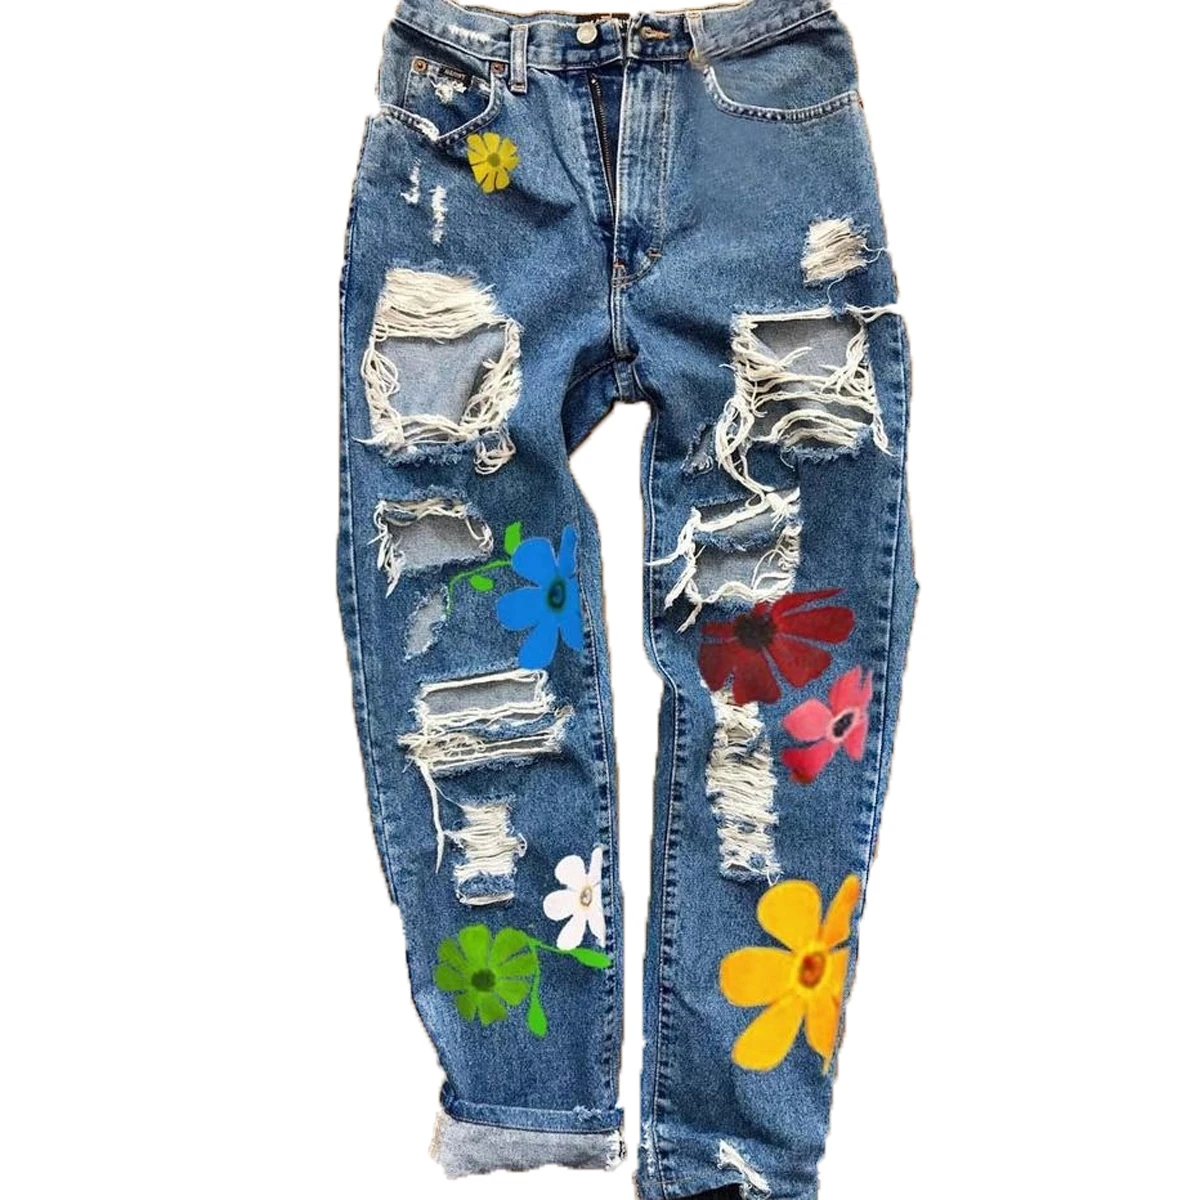  Jeans para mujer - Jeans rectos con estampado floral